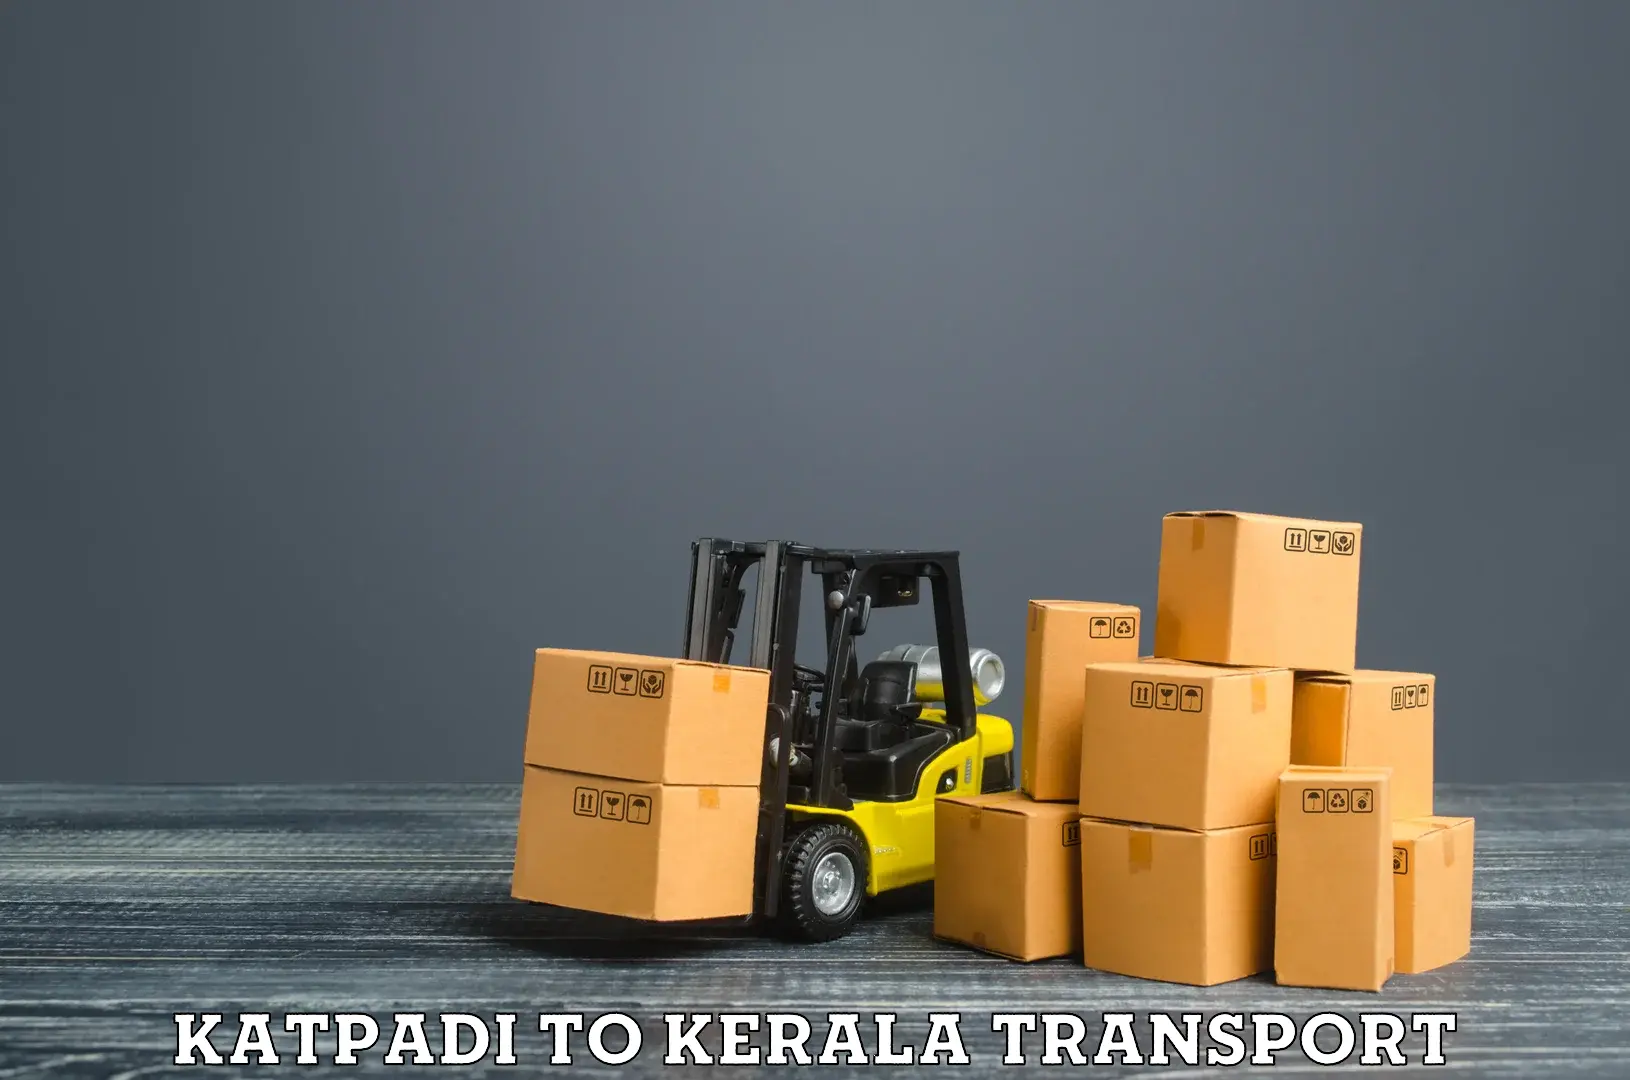 Transport in sharing Katpadi to Malappuram